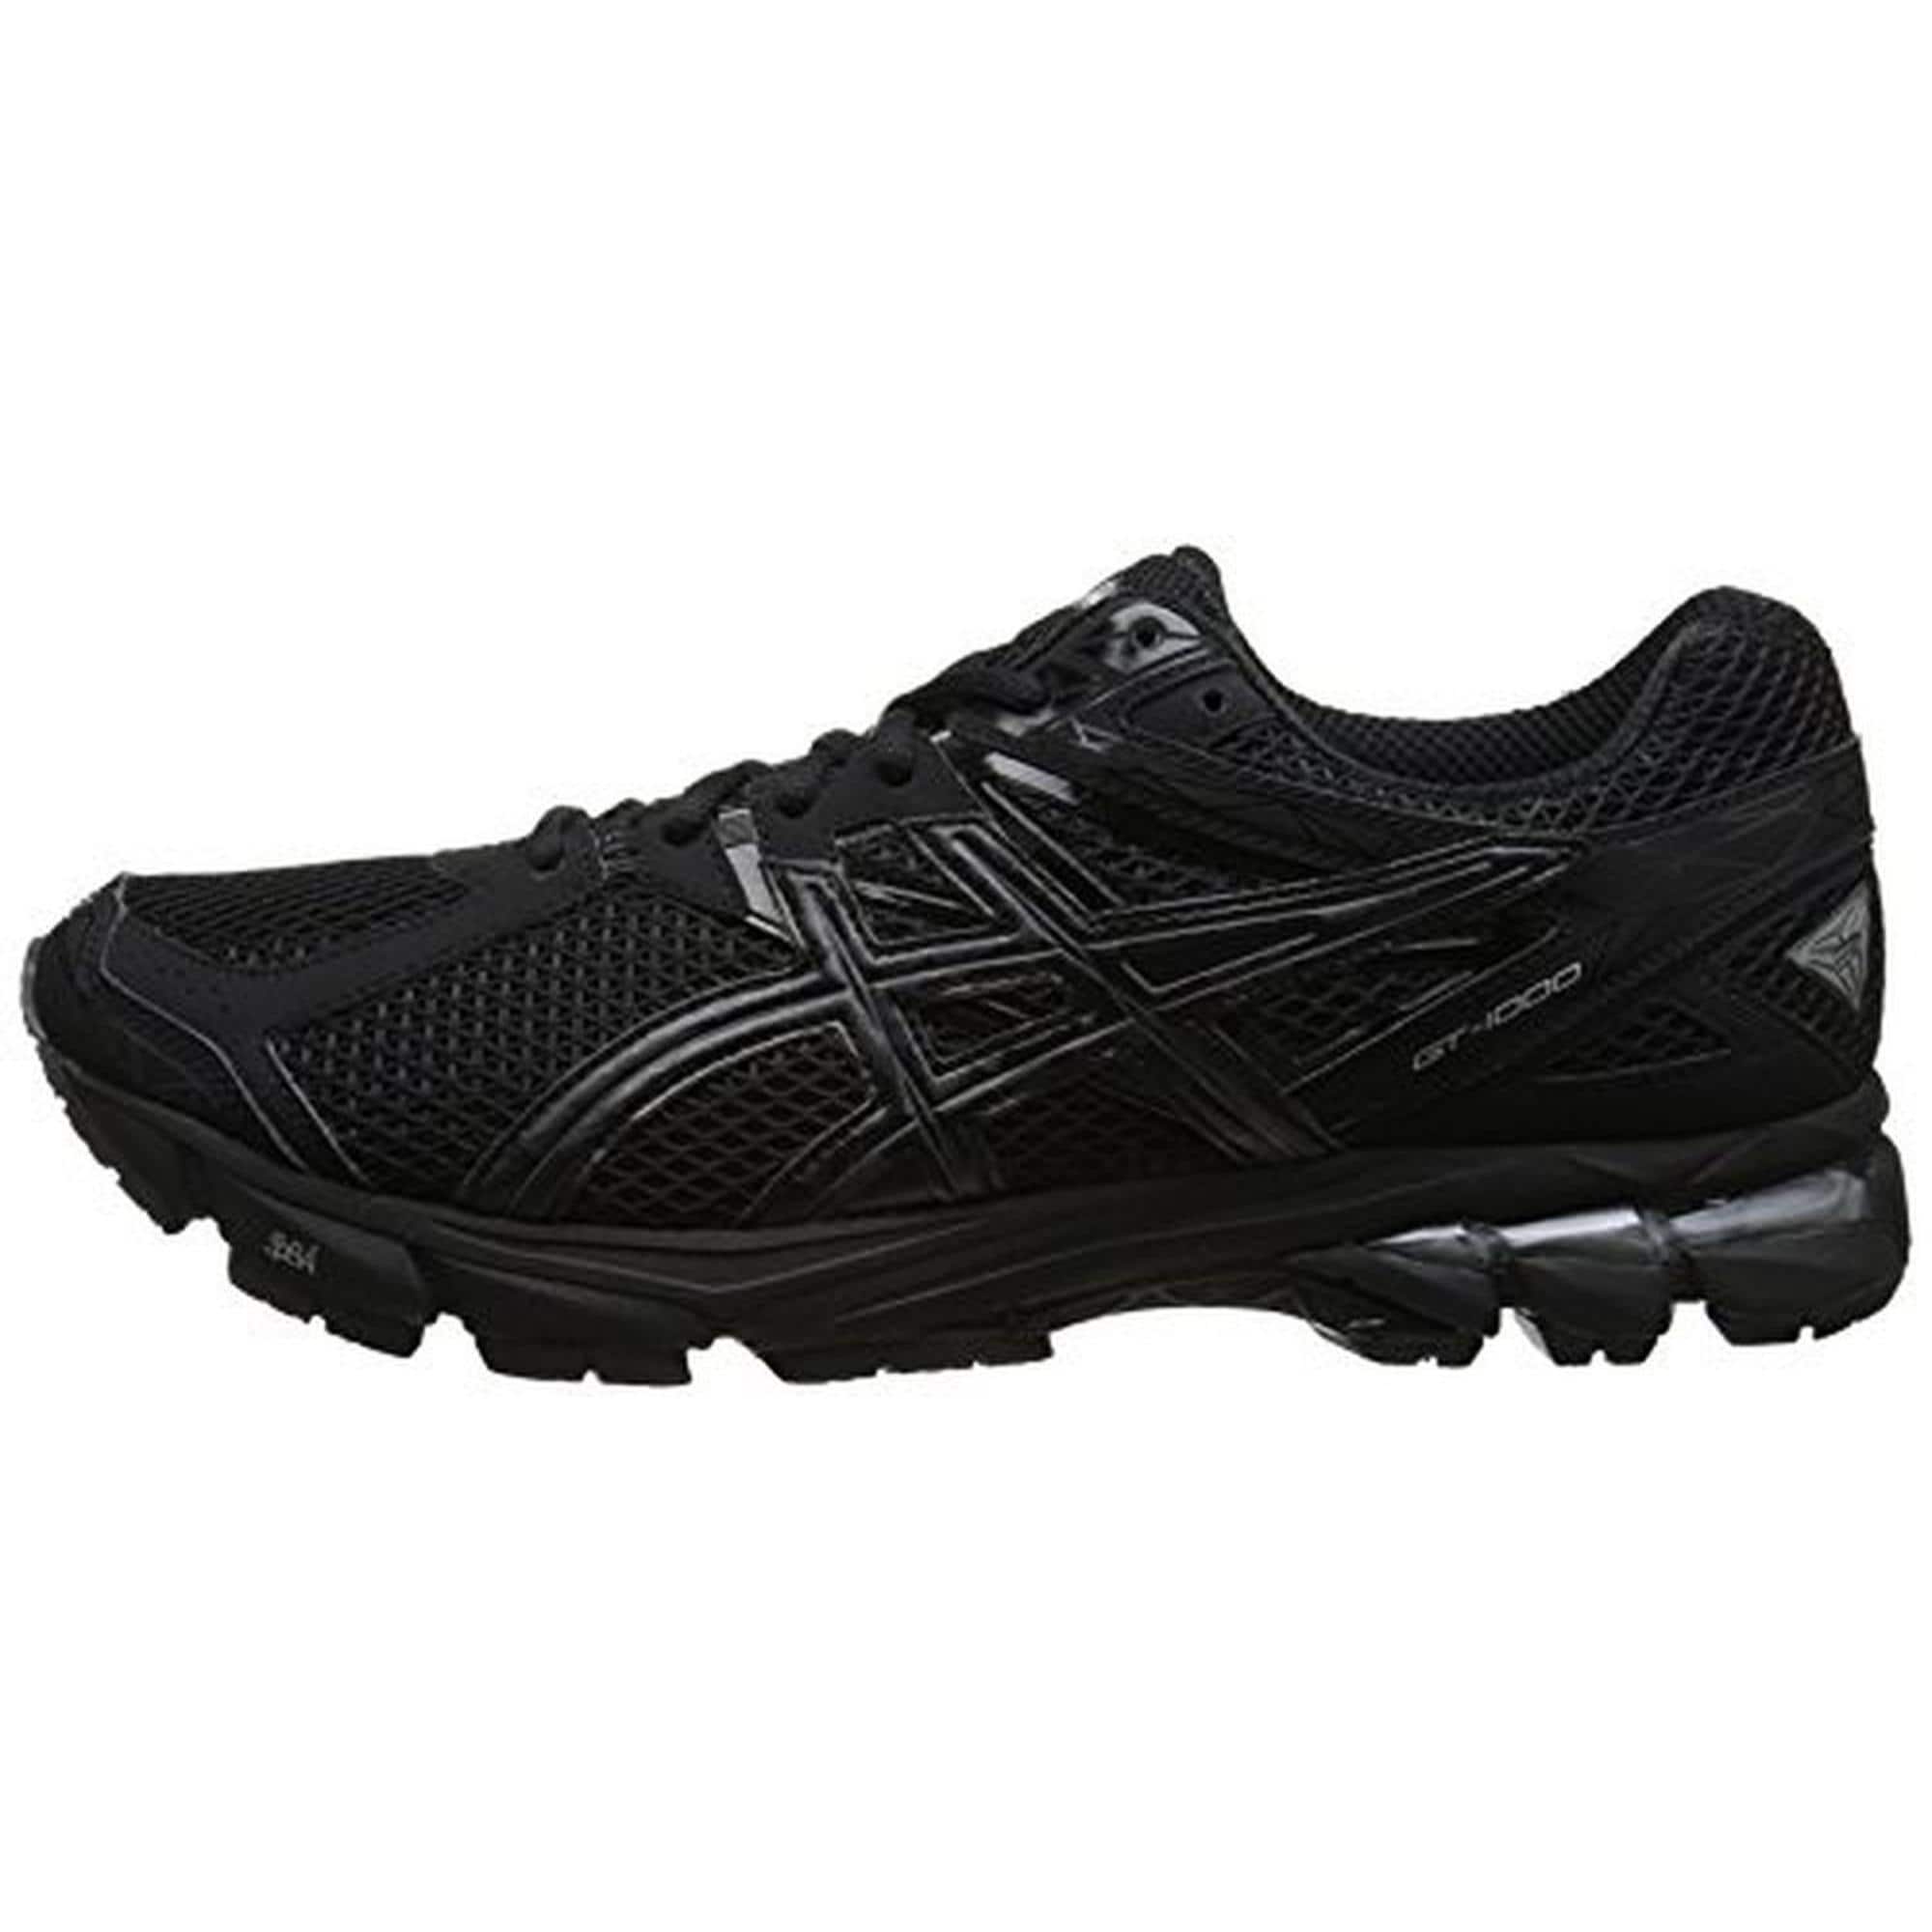 men's gt 1000 3 running shoe